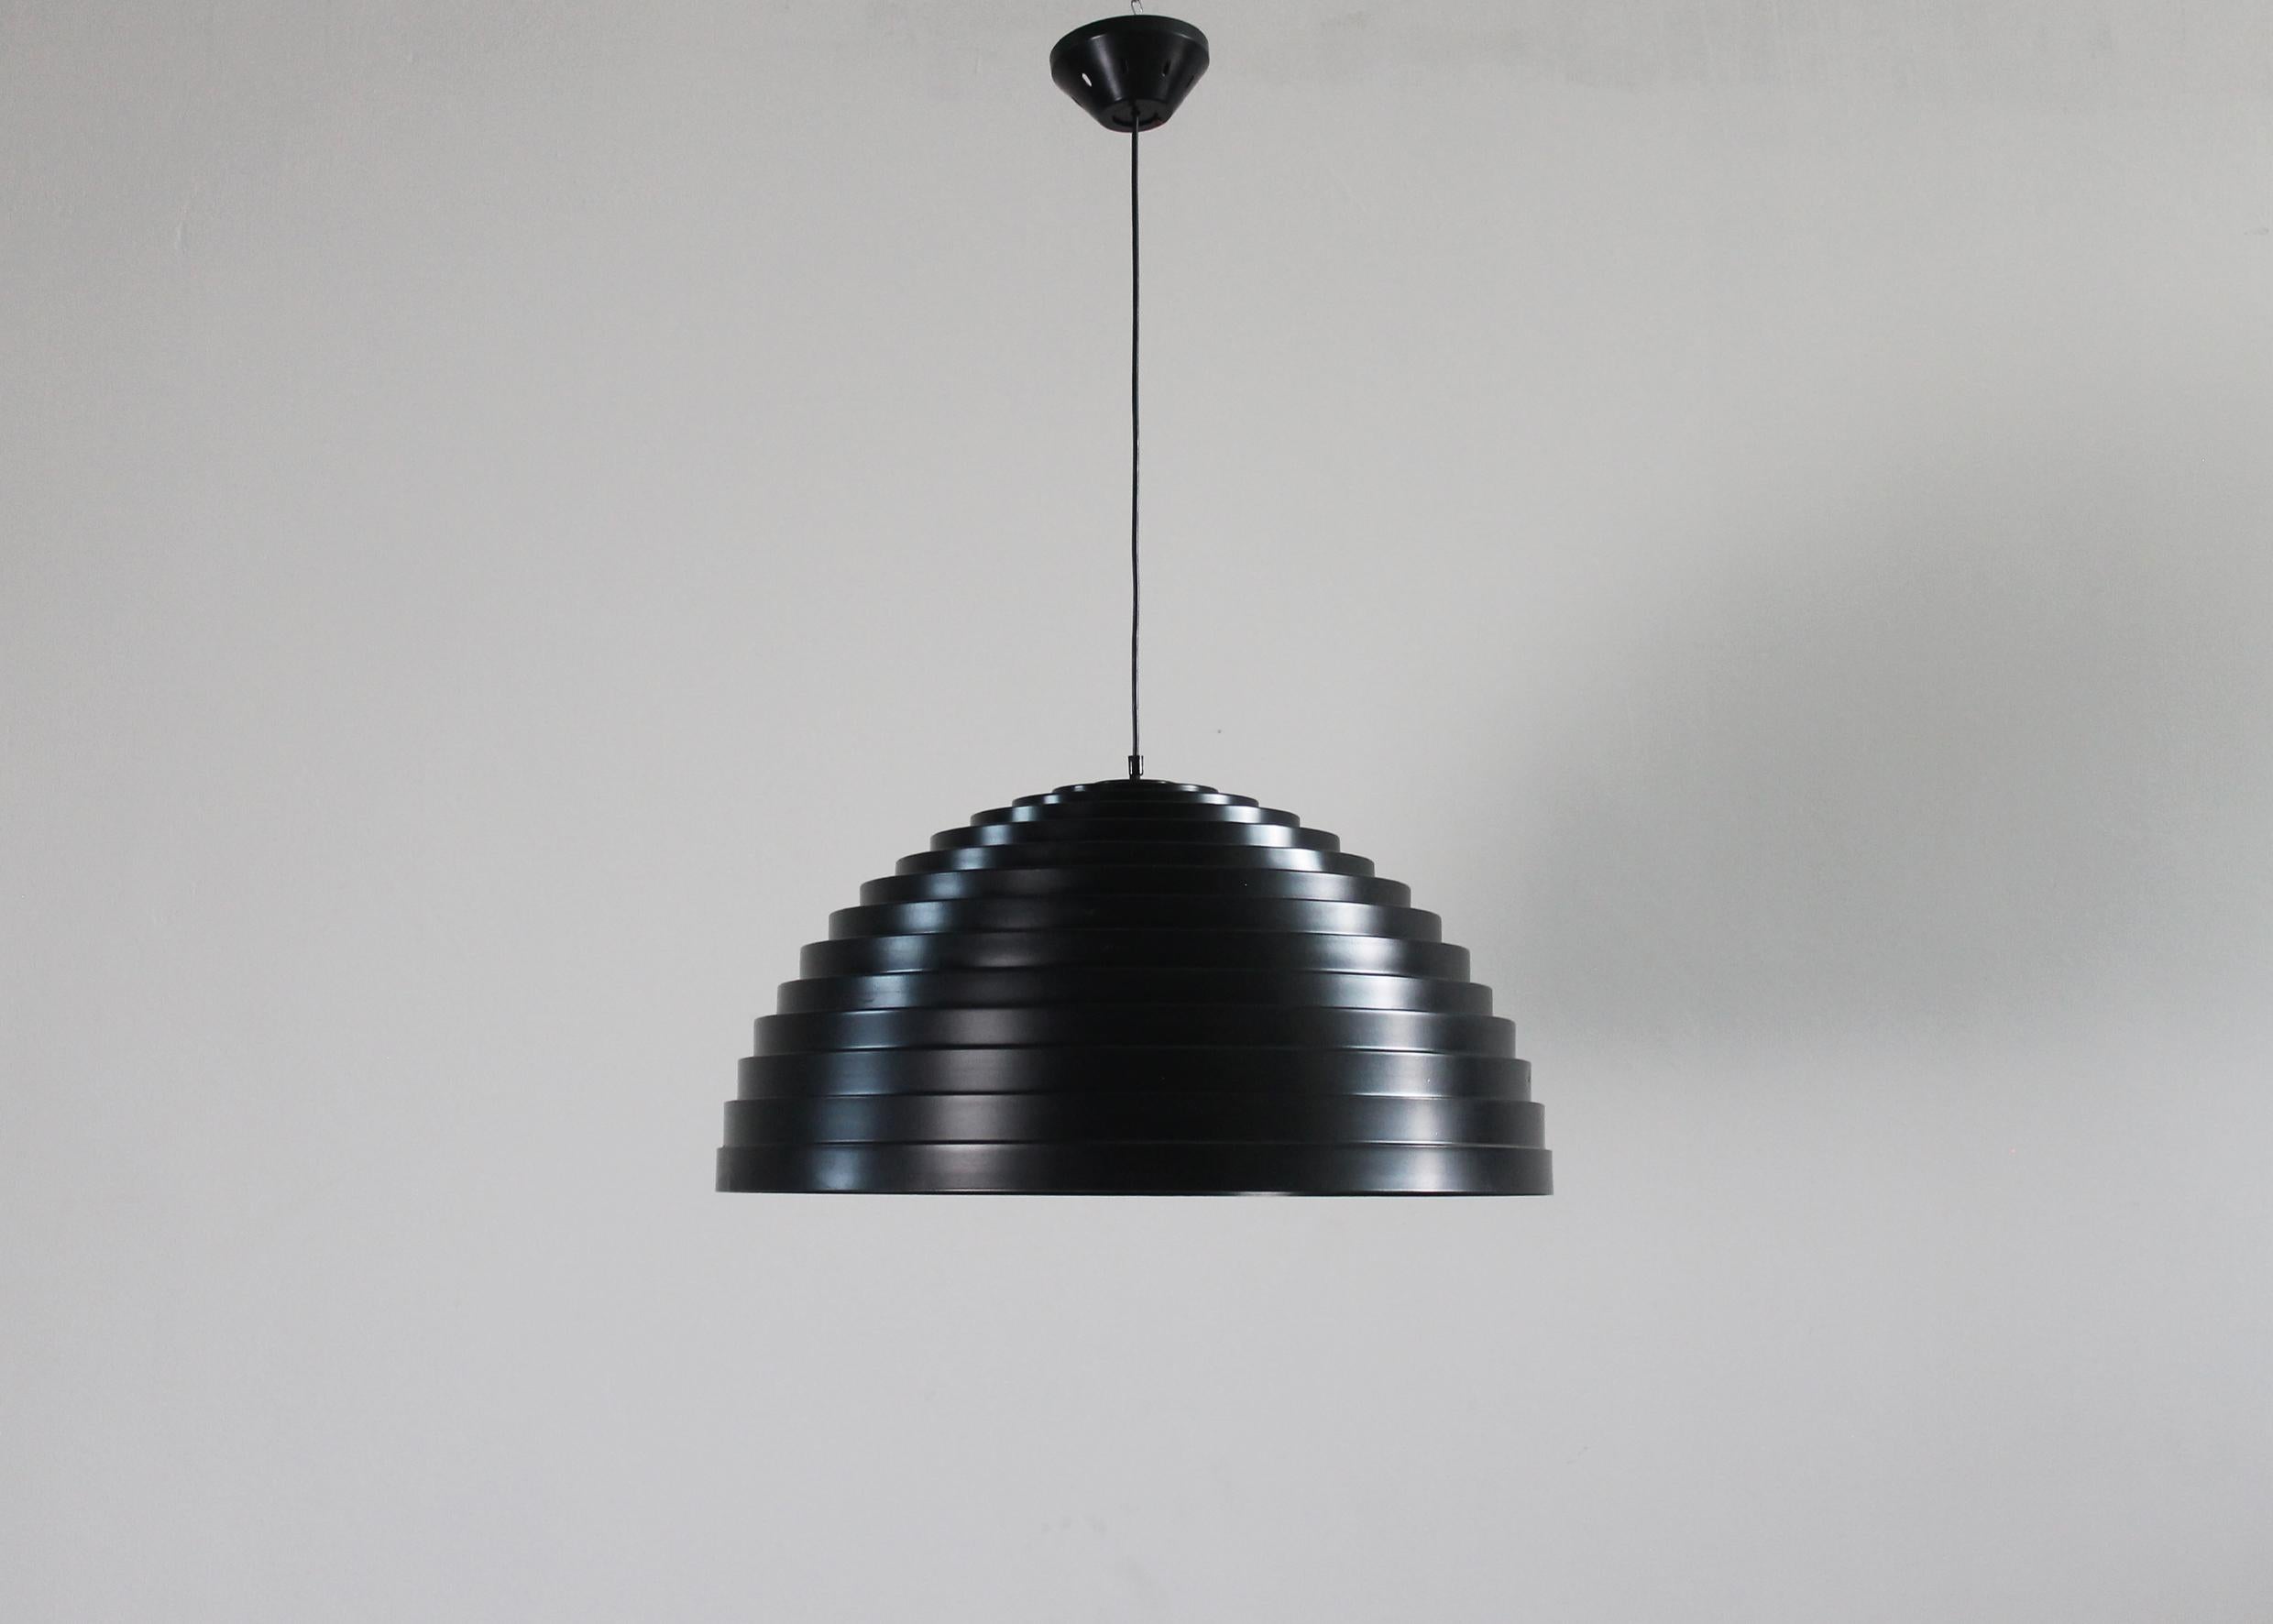 Diese seltene Deckenleuchte oder Kronleuchter (Modell Step) mit einem halbkugelförmigen Lampenschirm aus schwarz lackiertem Aluminium wurde von Elios Martinelli entworfen und von der italienischen Firma Martinelli Luce in den 1970er Jahren